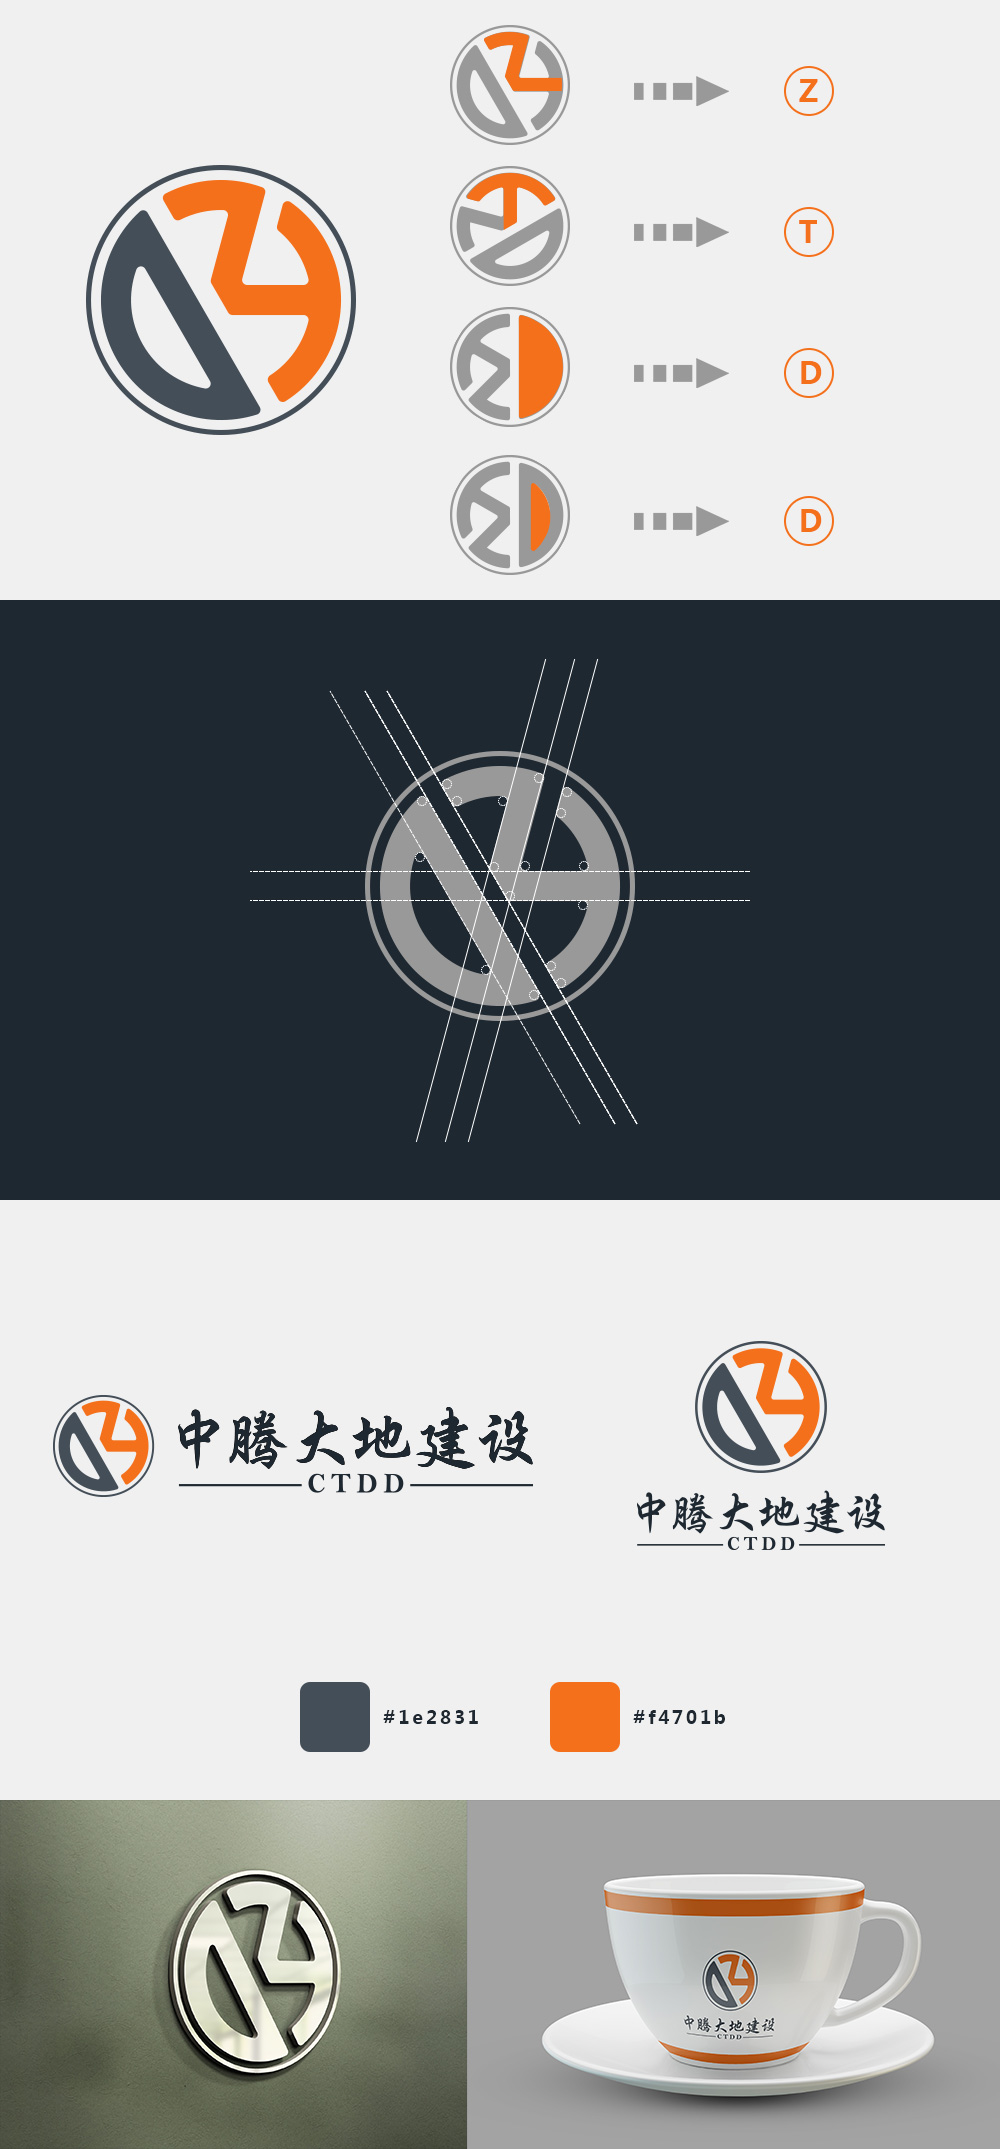 中腾大地建设工程有限公司标志设计logo